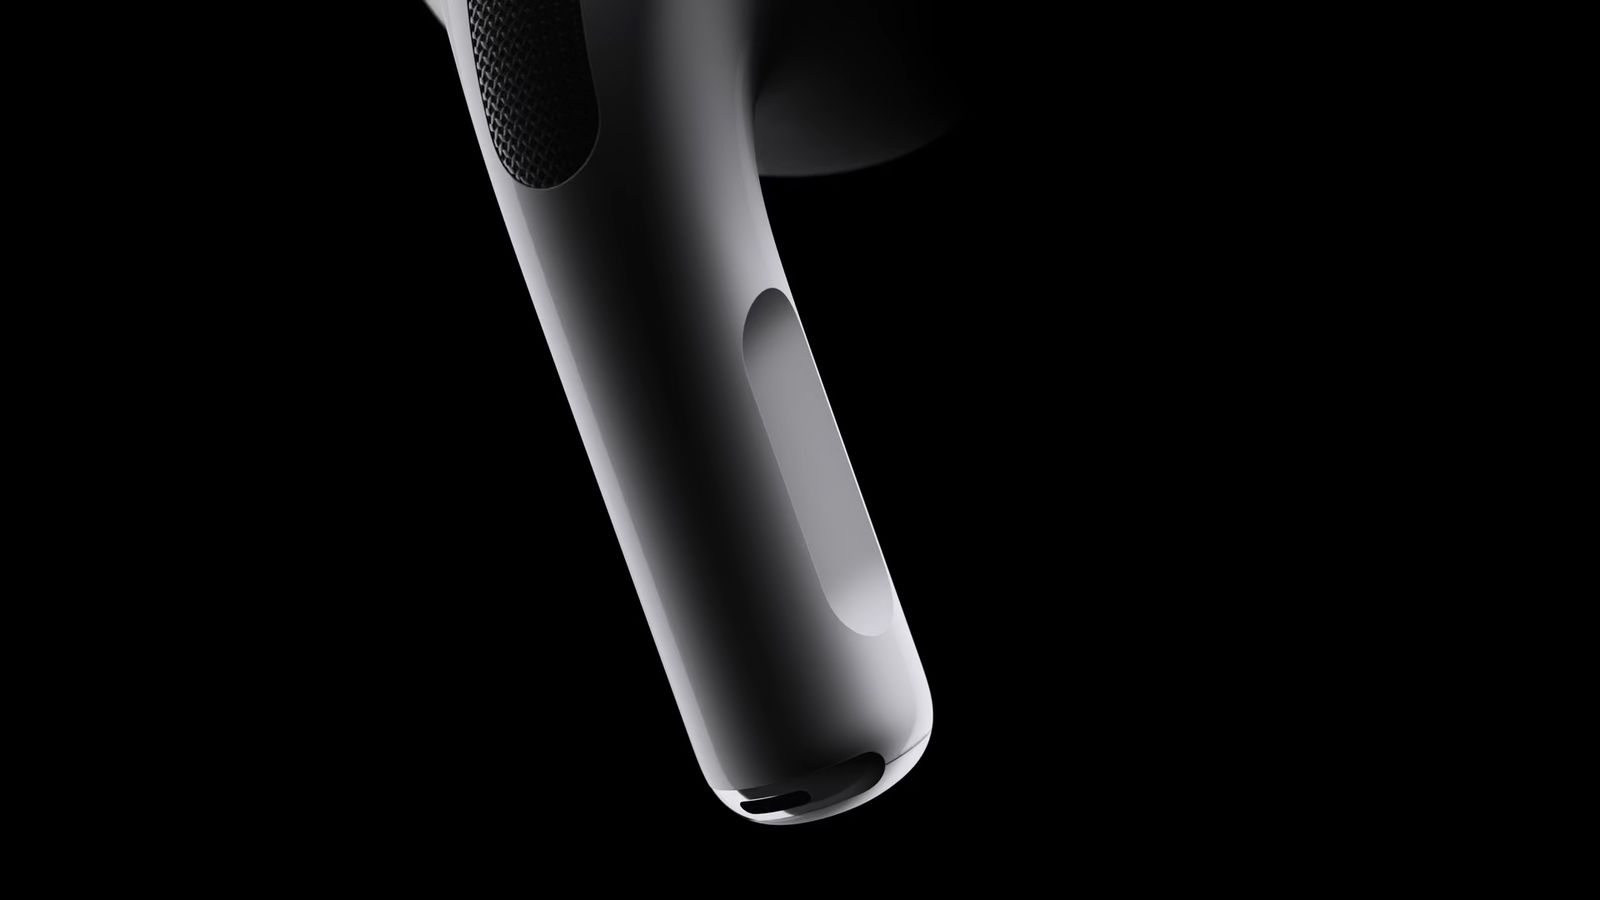 Z iPhoneIslam.com: zbliżenie nowoczesnych i eleganckich czarnych słuchawek AirPods na ciemnym tle, podkreślające ich elegancki wygląd i fakturę.